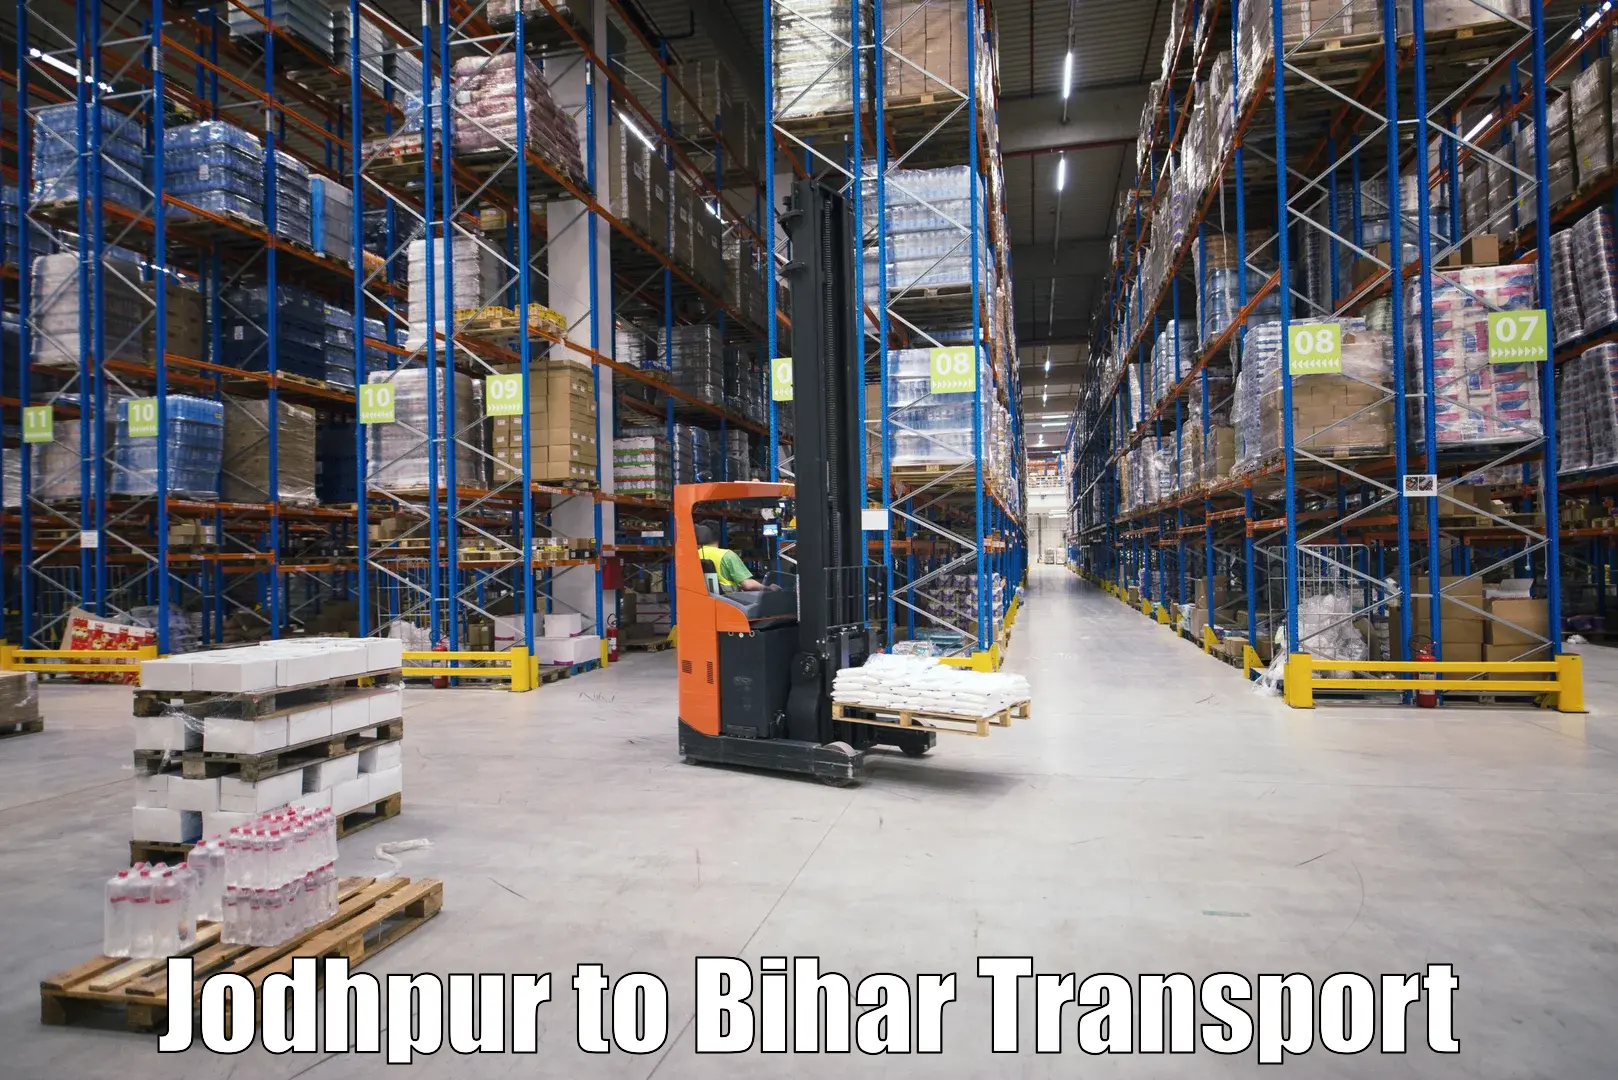 Transport in sharing Jodhpur to Buxar